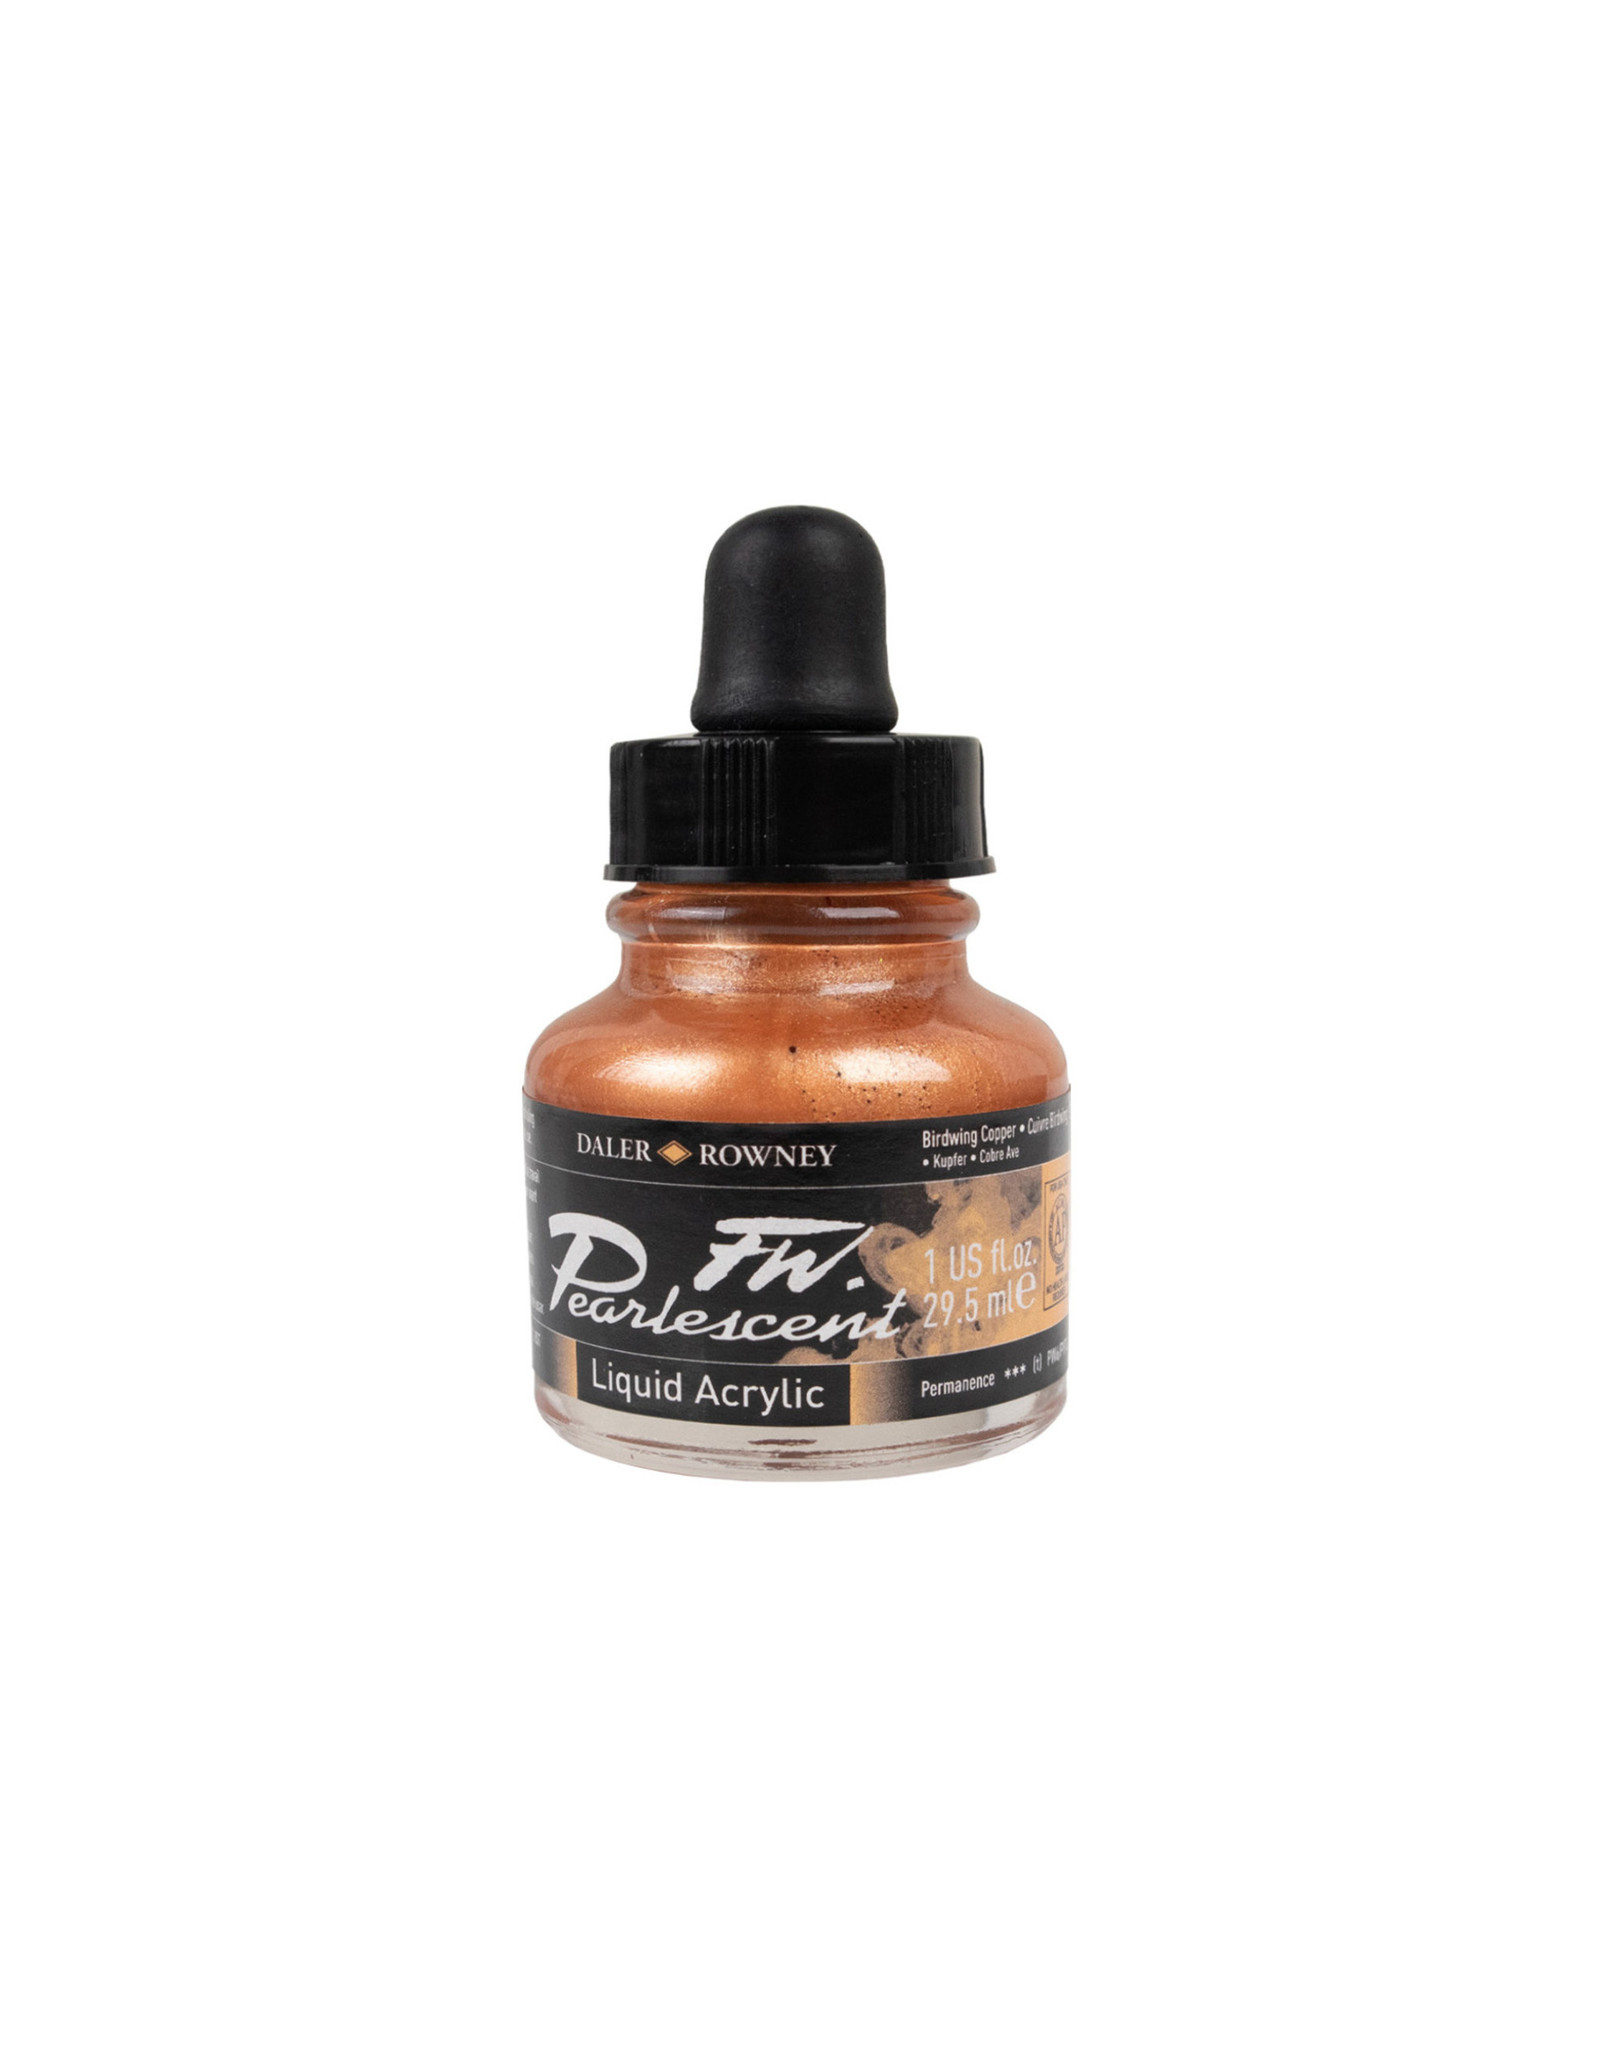 Daler-Rowney Daler-Rowney FW Pearlescent Ink, Brdwng Copper 29.5ml